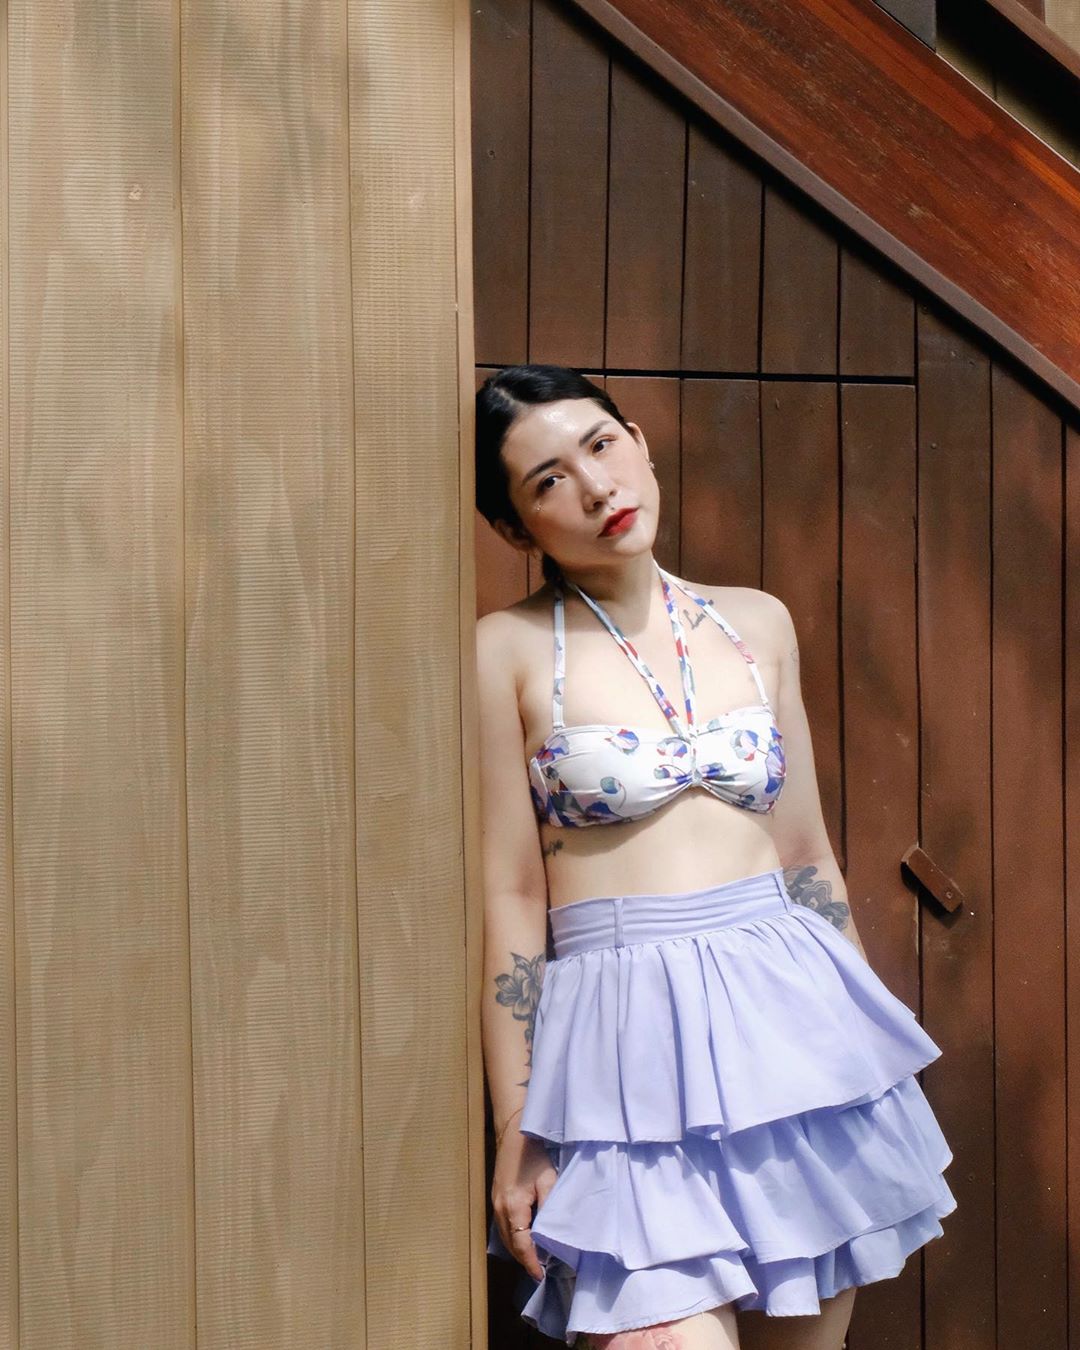 Thời trang cung cự giải - Lâm Thúy Nhàn mặc áo bikini và chân váy xếp tầng màu tím